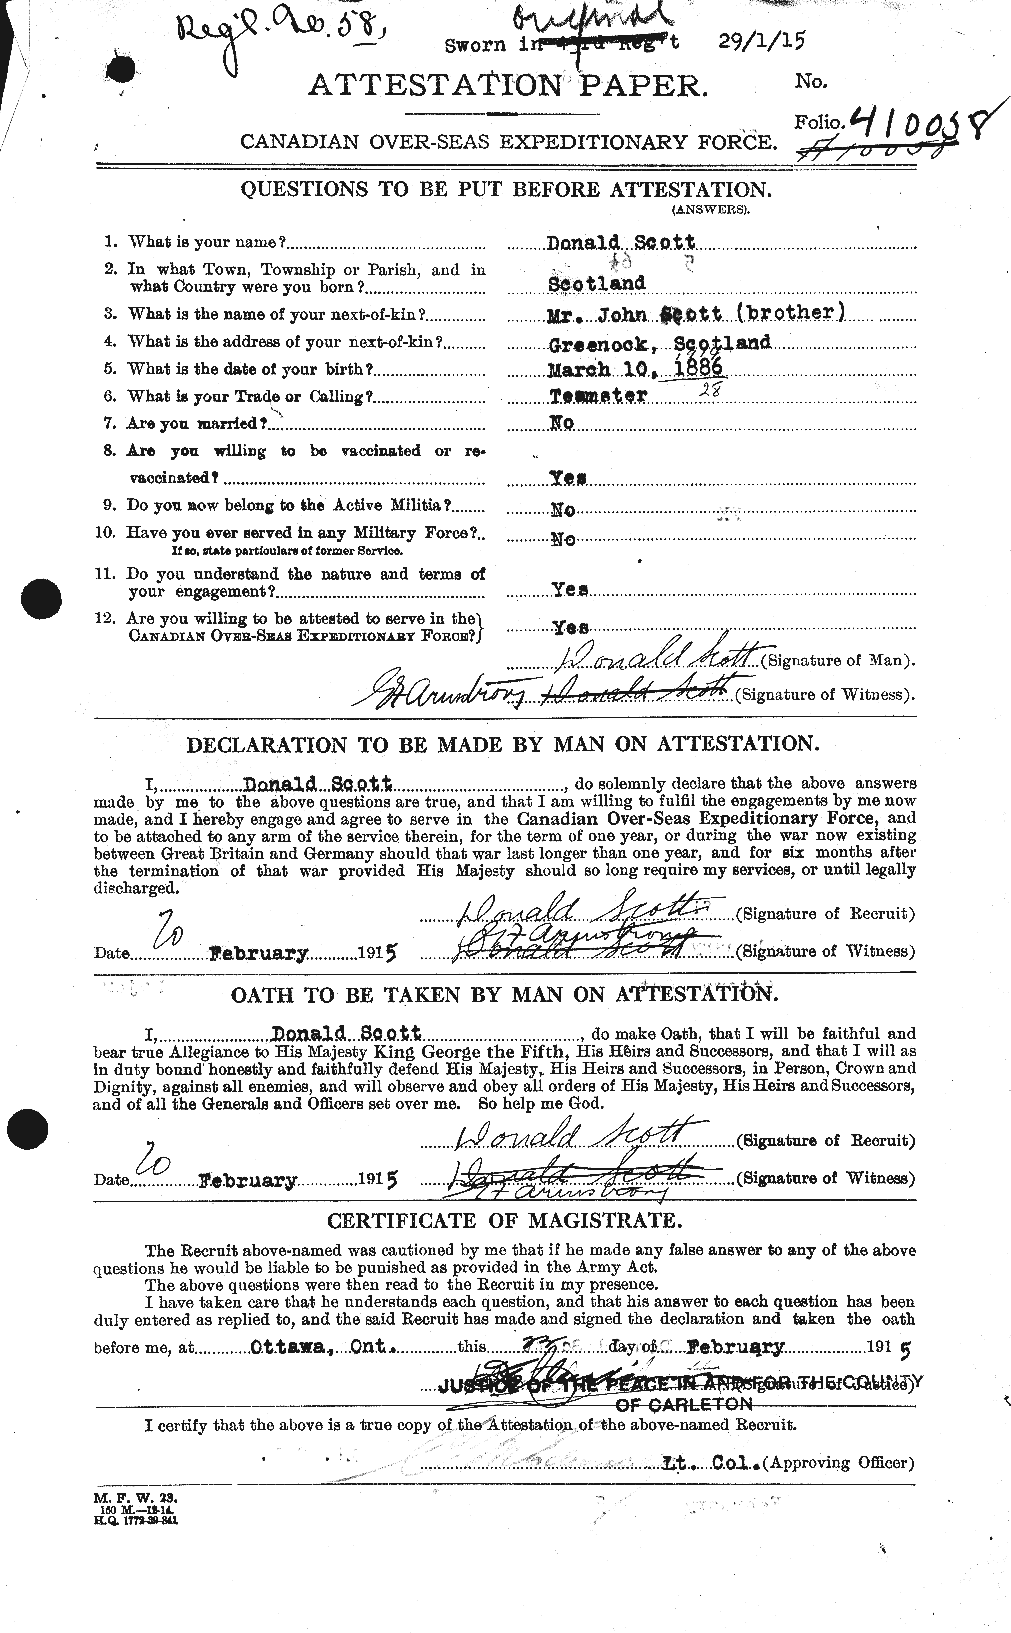 Dossiers du Personnel de la Première Guerre mondiale - CEC 085364a